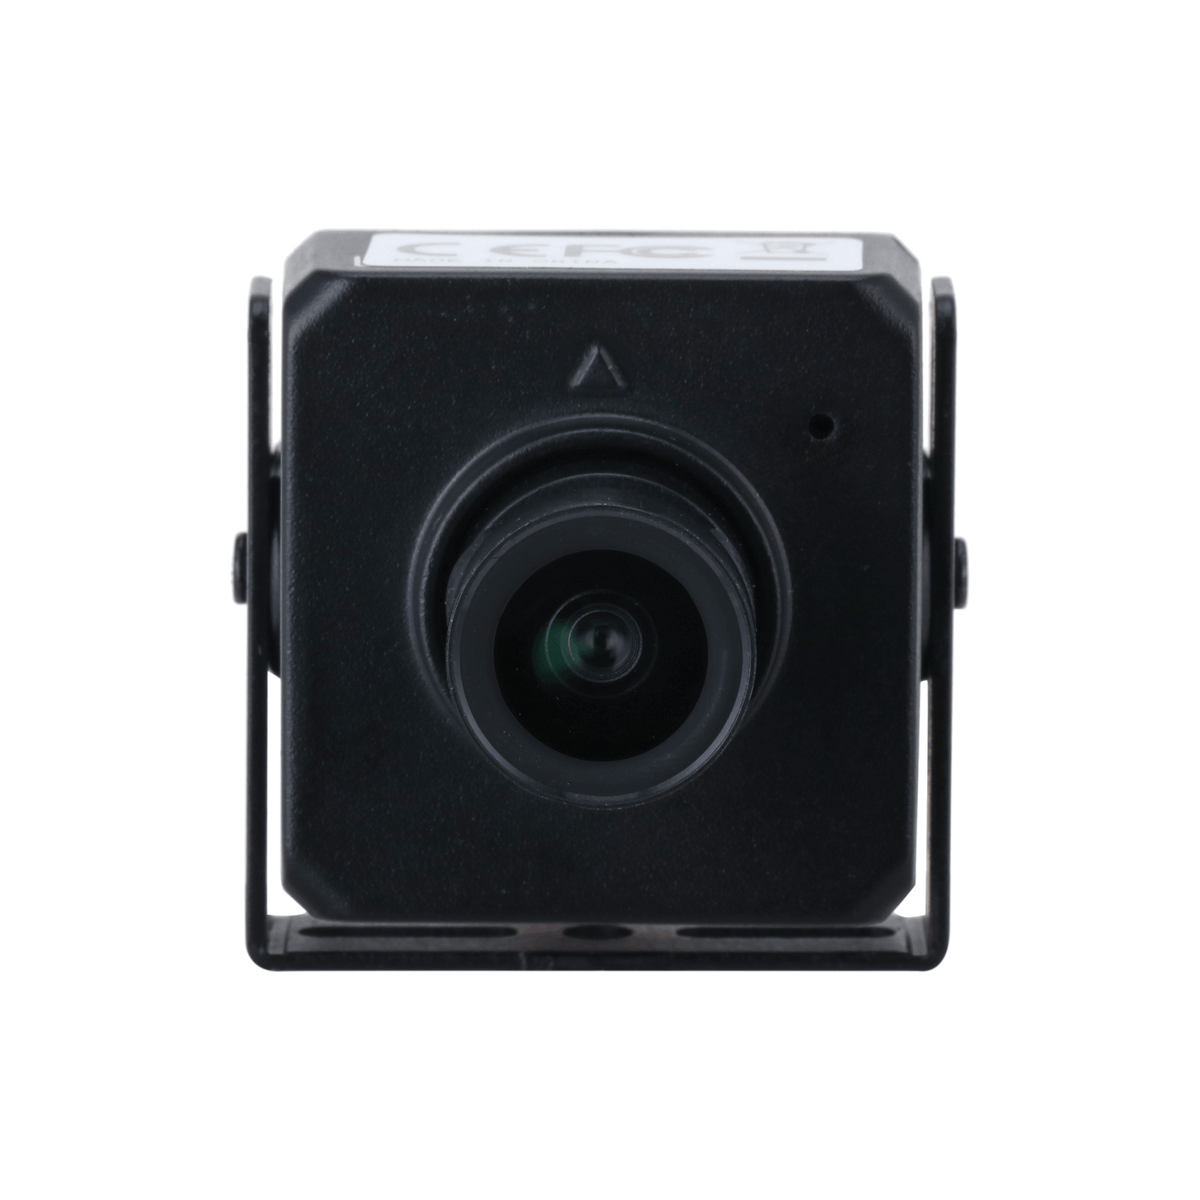 DAHUA IPC-HUM4231S-L5 2MP Fixed-focal Network Camera